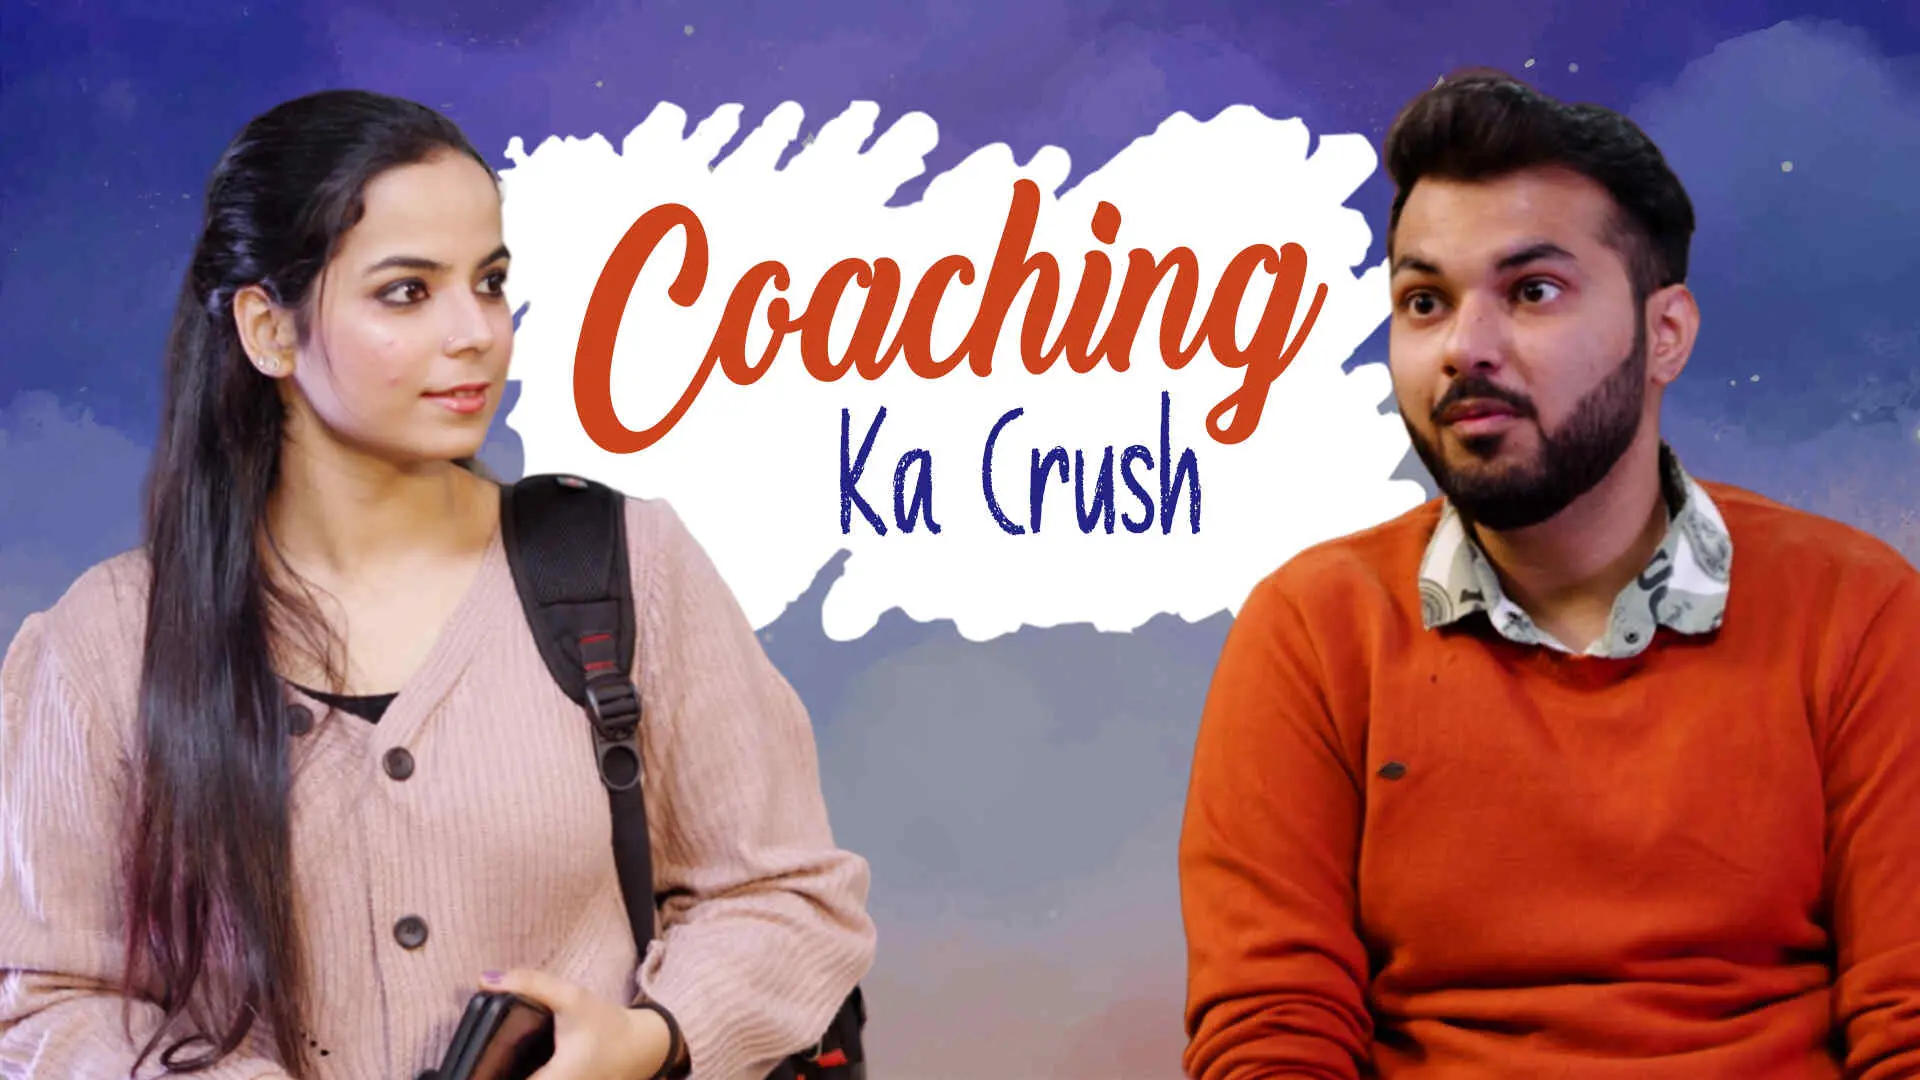 Coaching Ka Crush